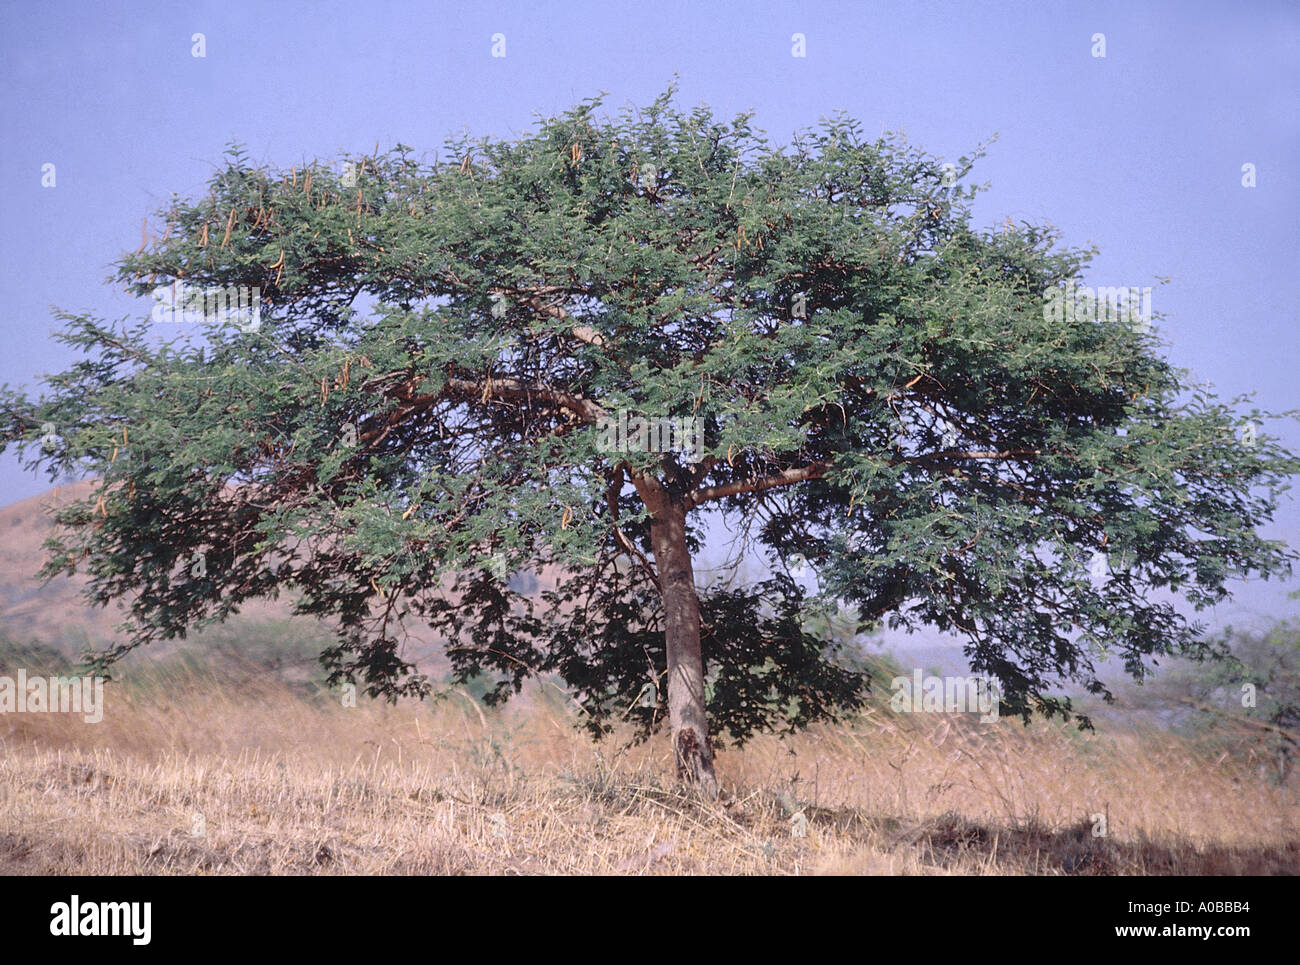 Form Acacia Leucophloea Distillers Acacia Family Mimosaceae Stock Photo